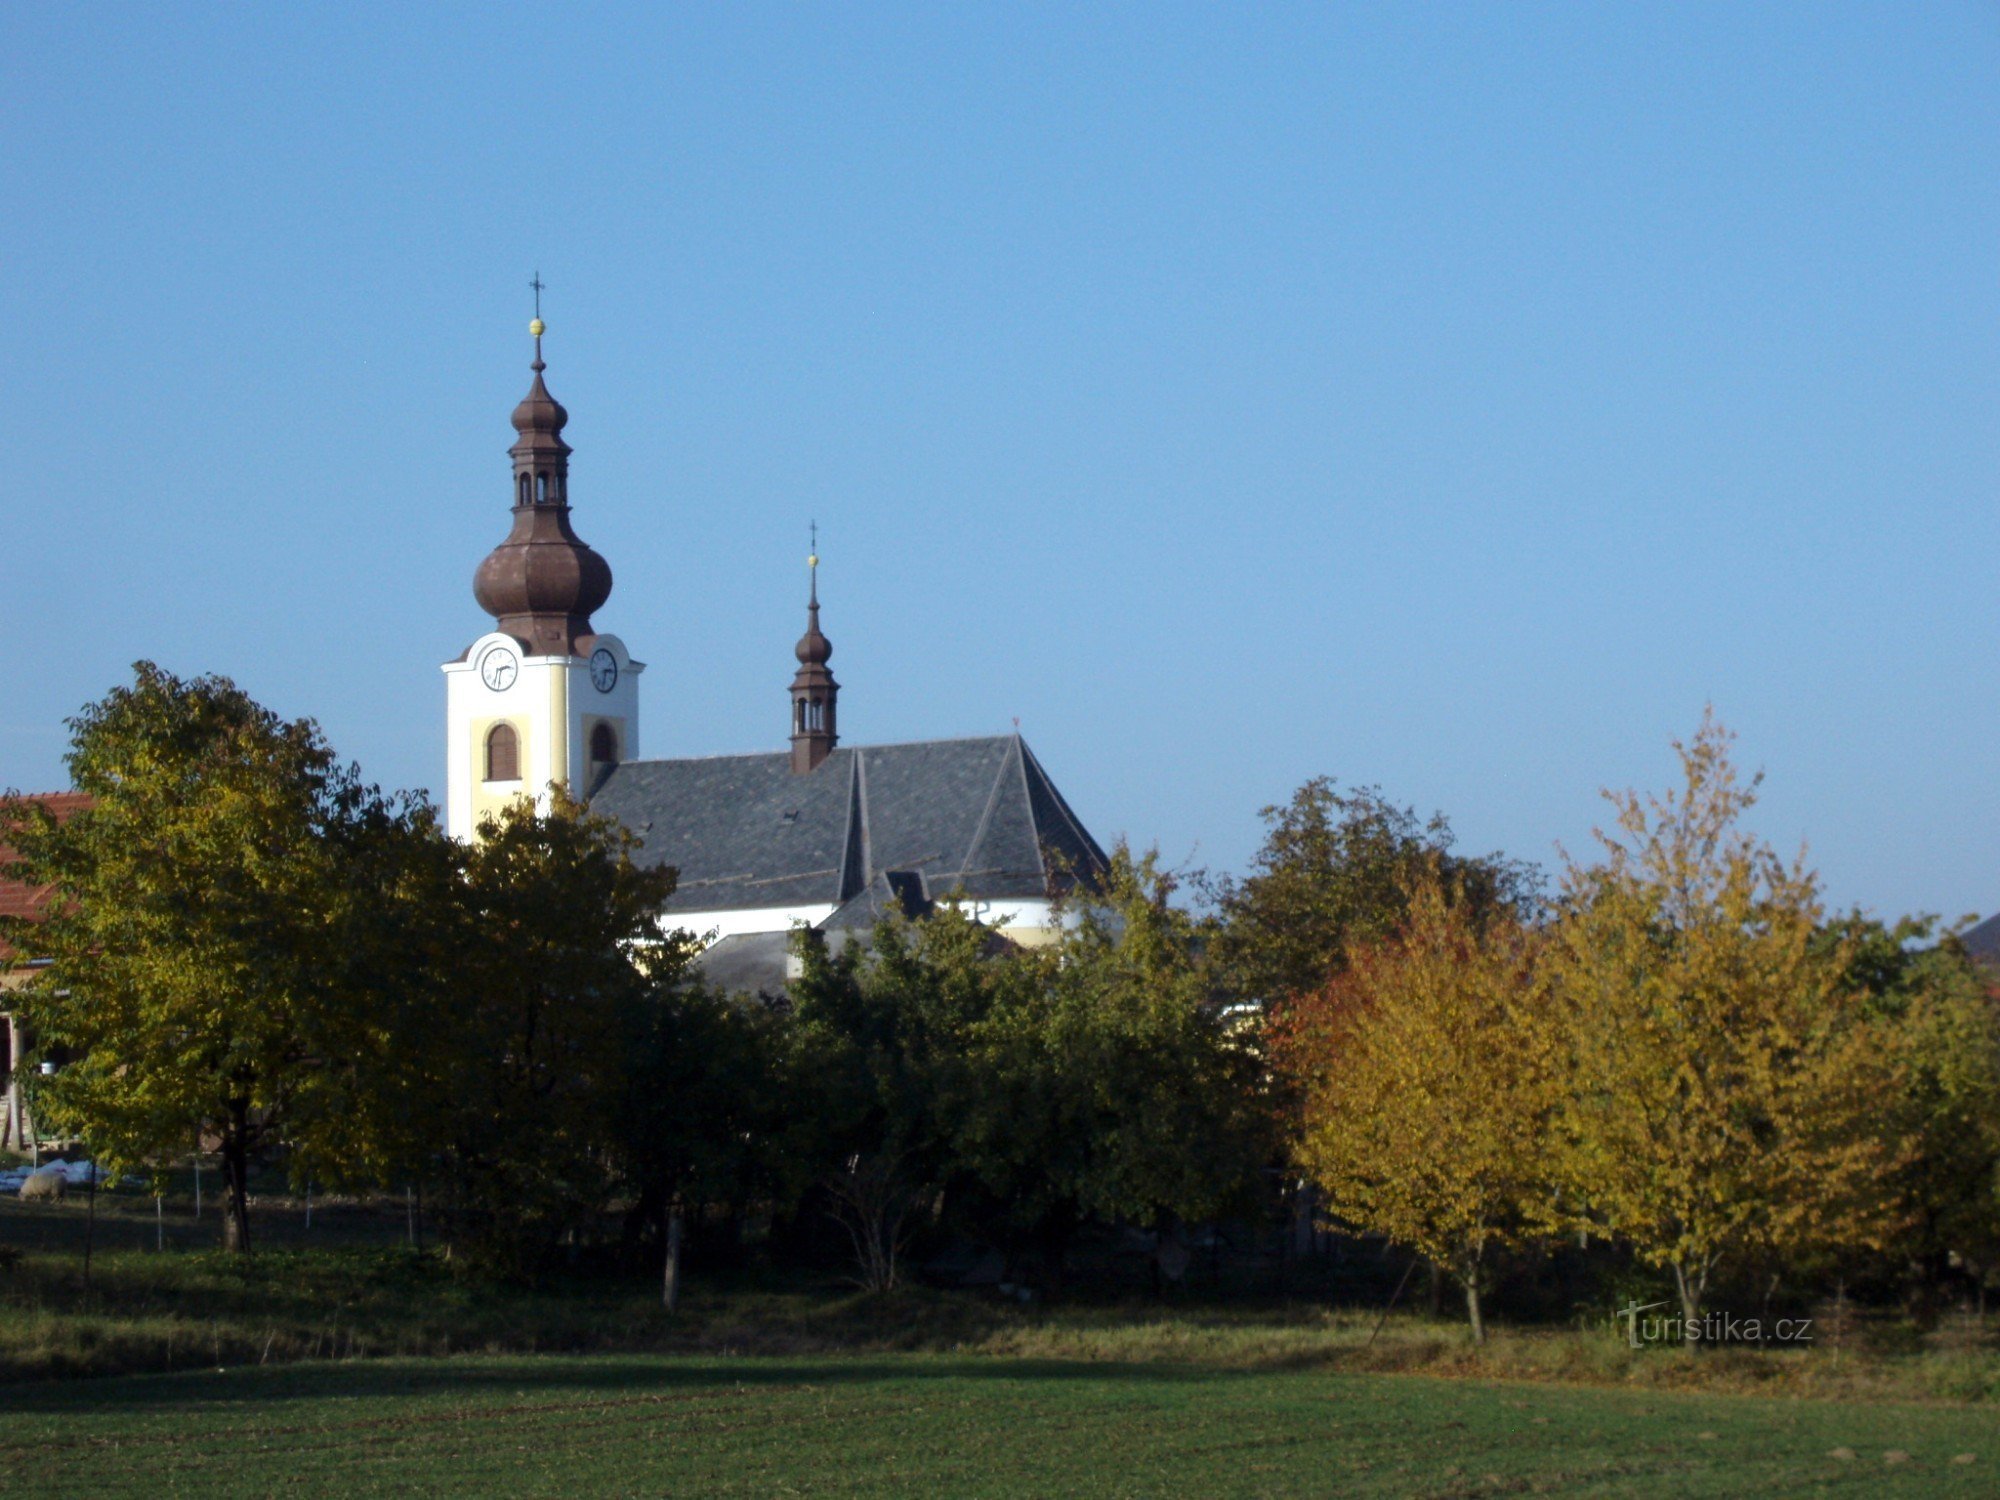 Vilémov - Nhà thờ St. Catherine